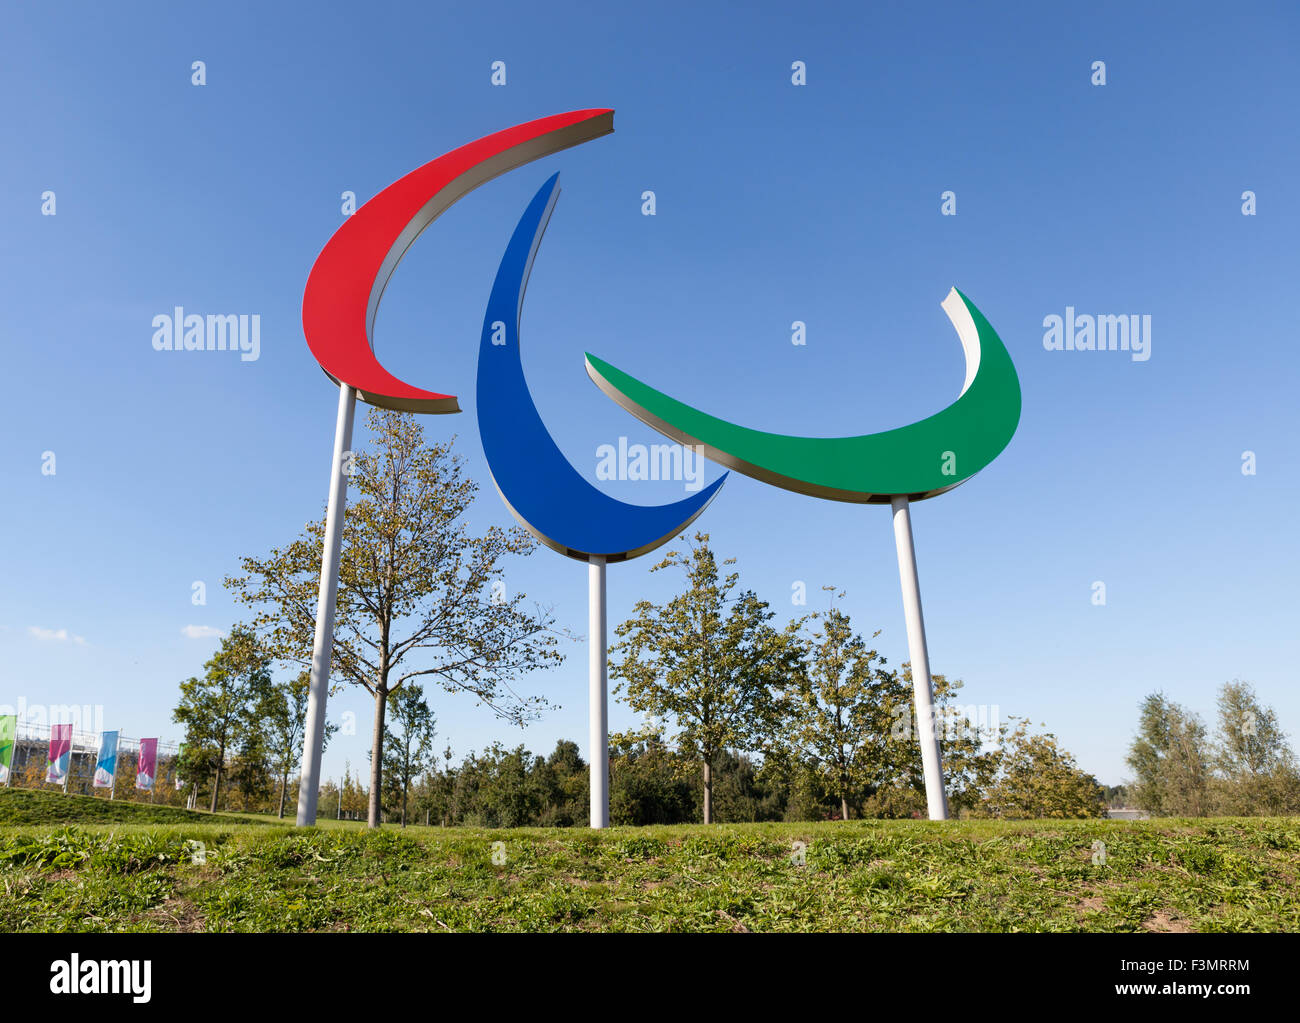 Le symbole des Jeux Paralympiques dans le parc Queen Elizabeth Olympic Park, héritage de les jeux de 2012 à Londres, au Royaume-Uni. Banque D'Images